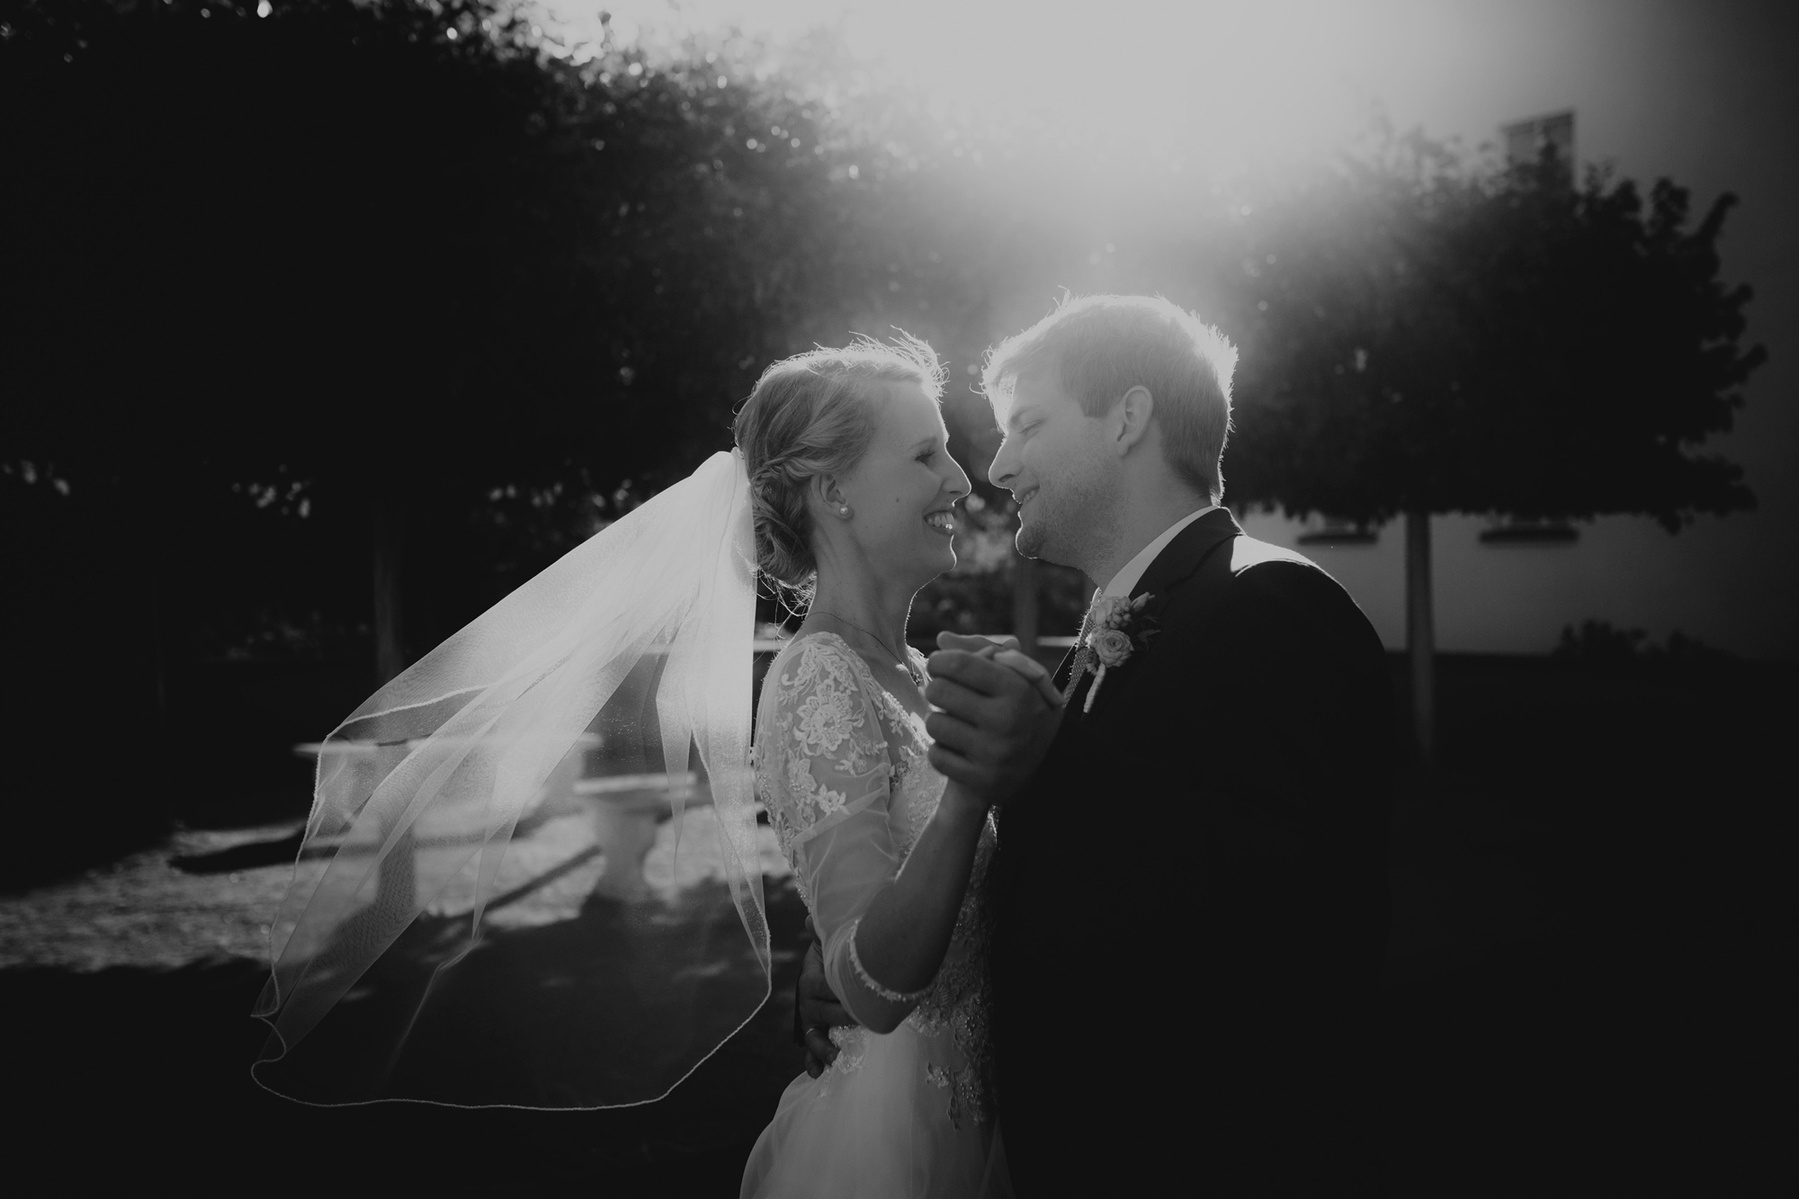 Beim Hochzeitstanz in der Abendsonne wirbelt der Bräutigam seine Braut lachend umher während ihr Schleier im Wind weht. 